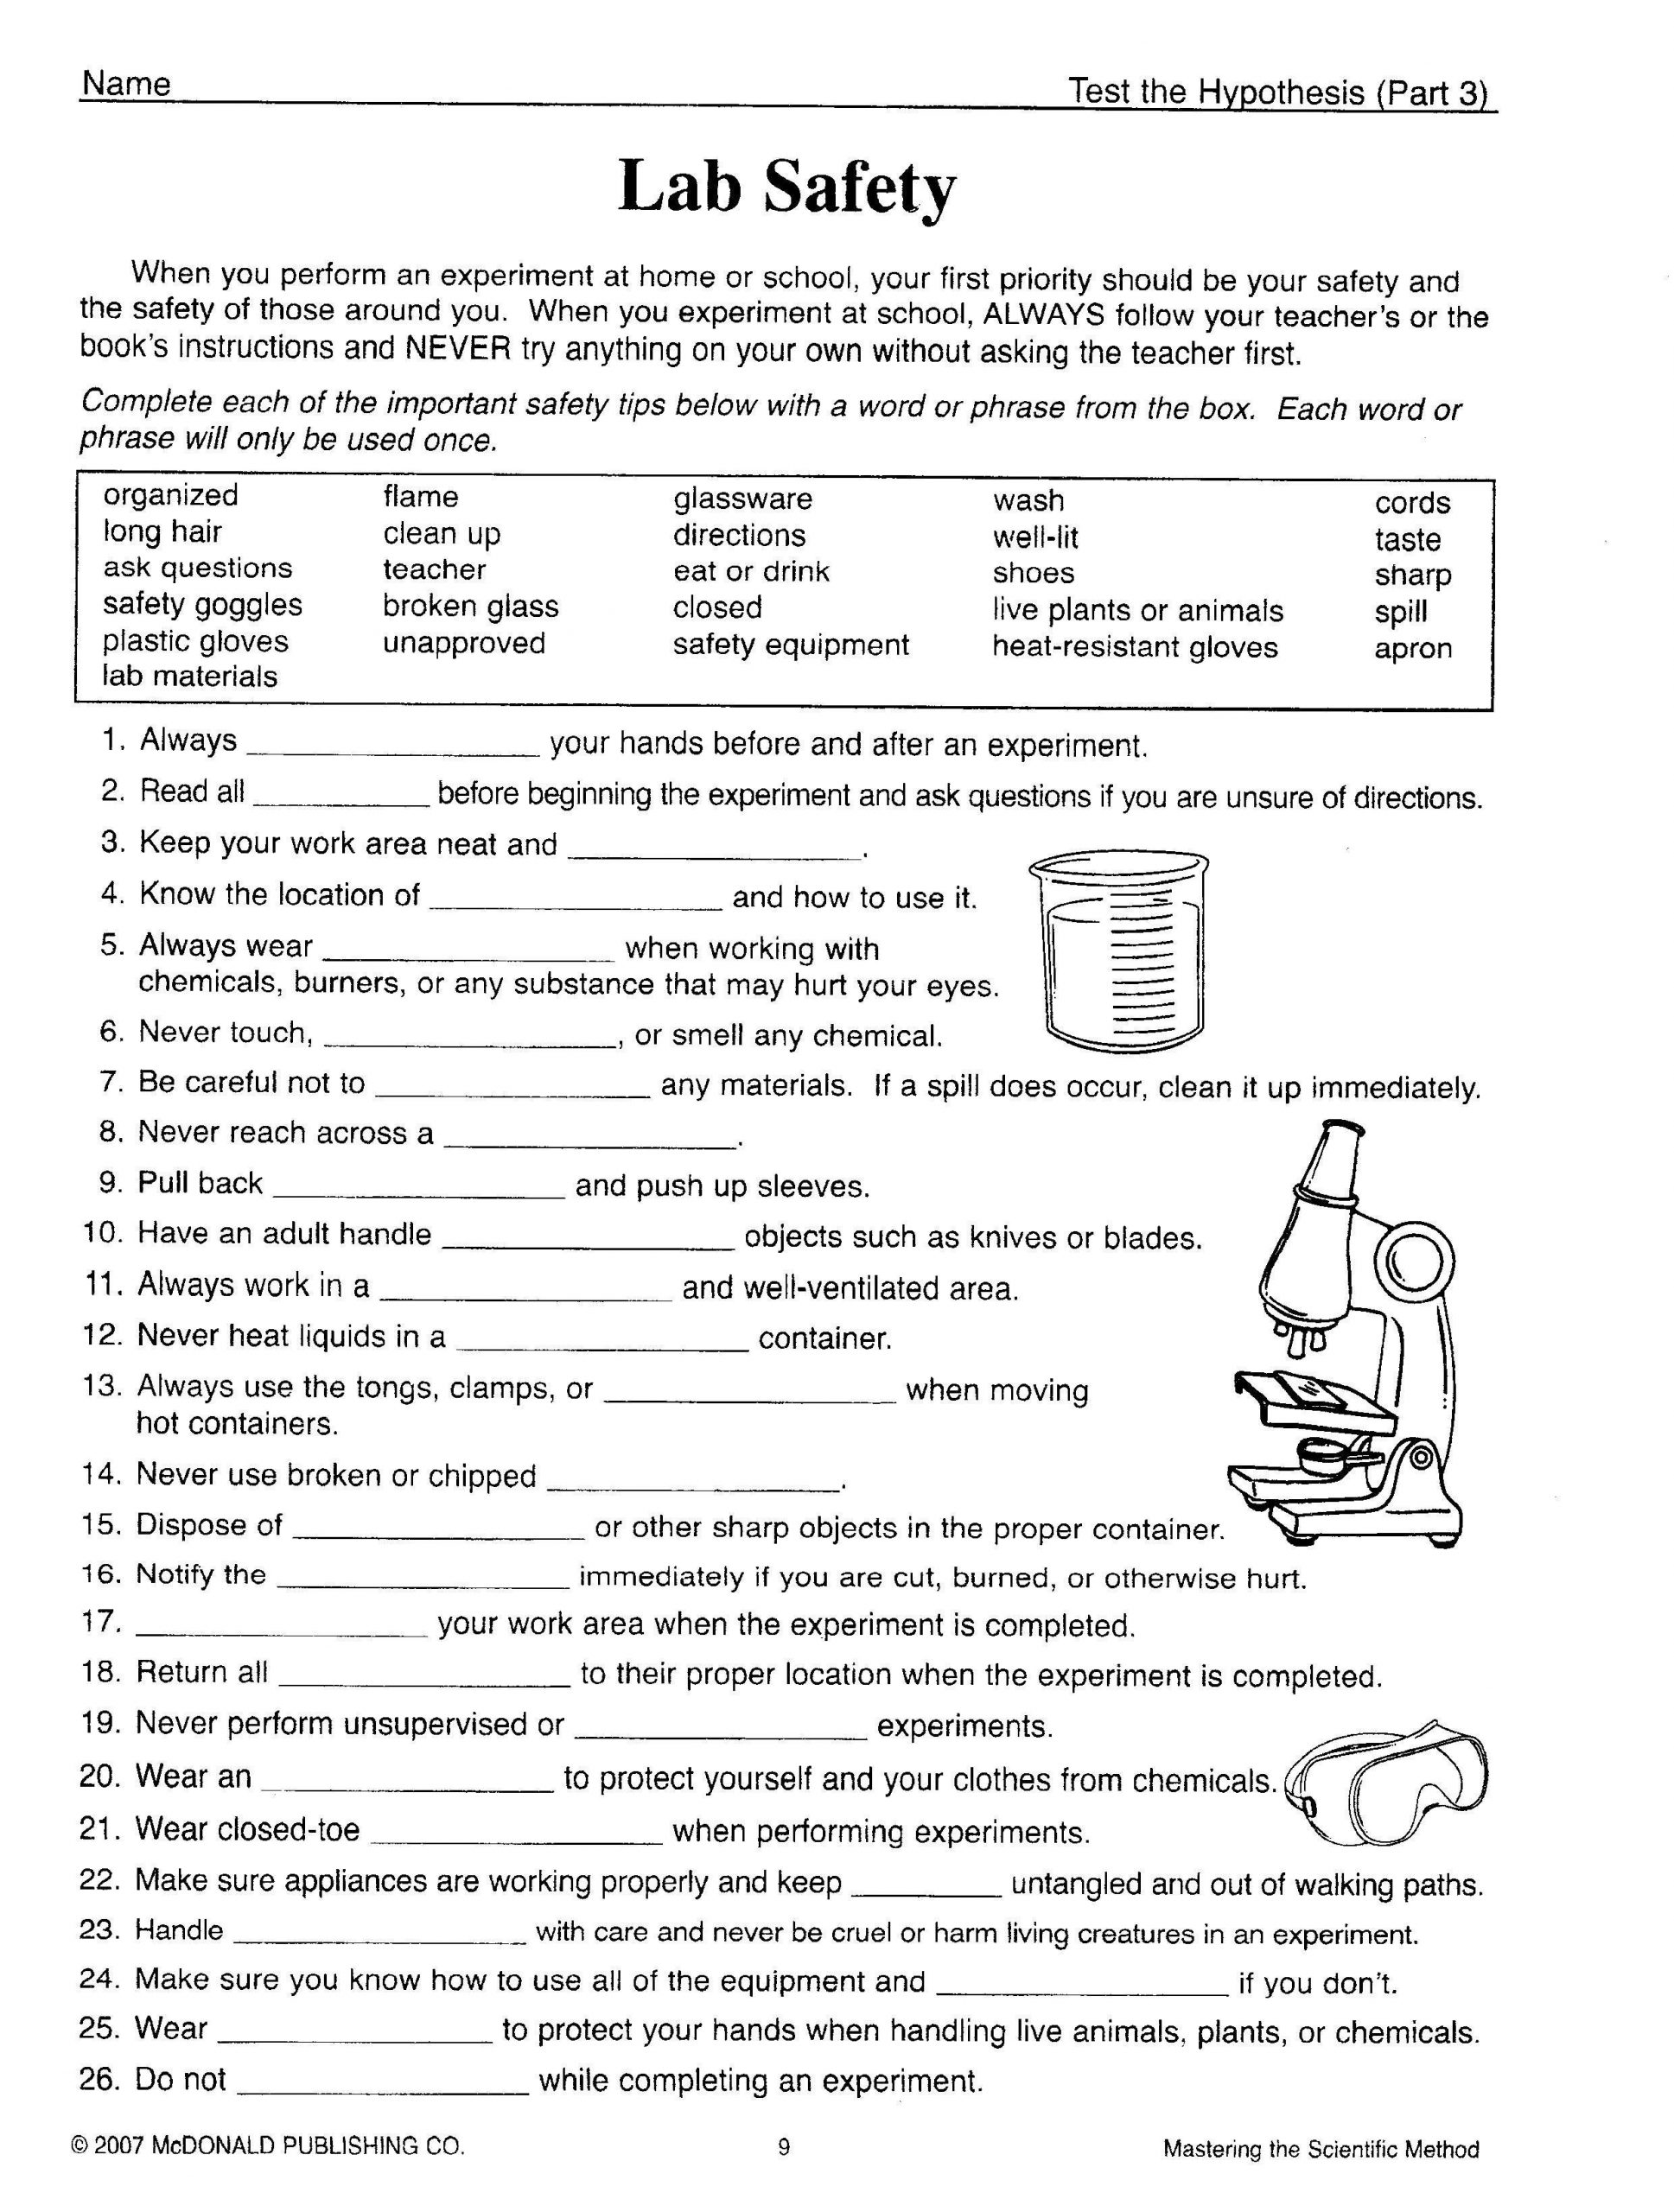 Science Skills Worksheet Answer Key Science tools Worksheet 4th Grade Fresh Kids Science